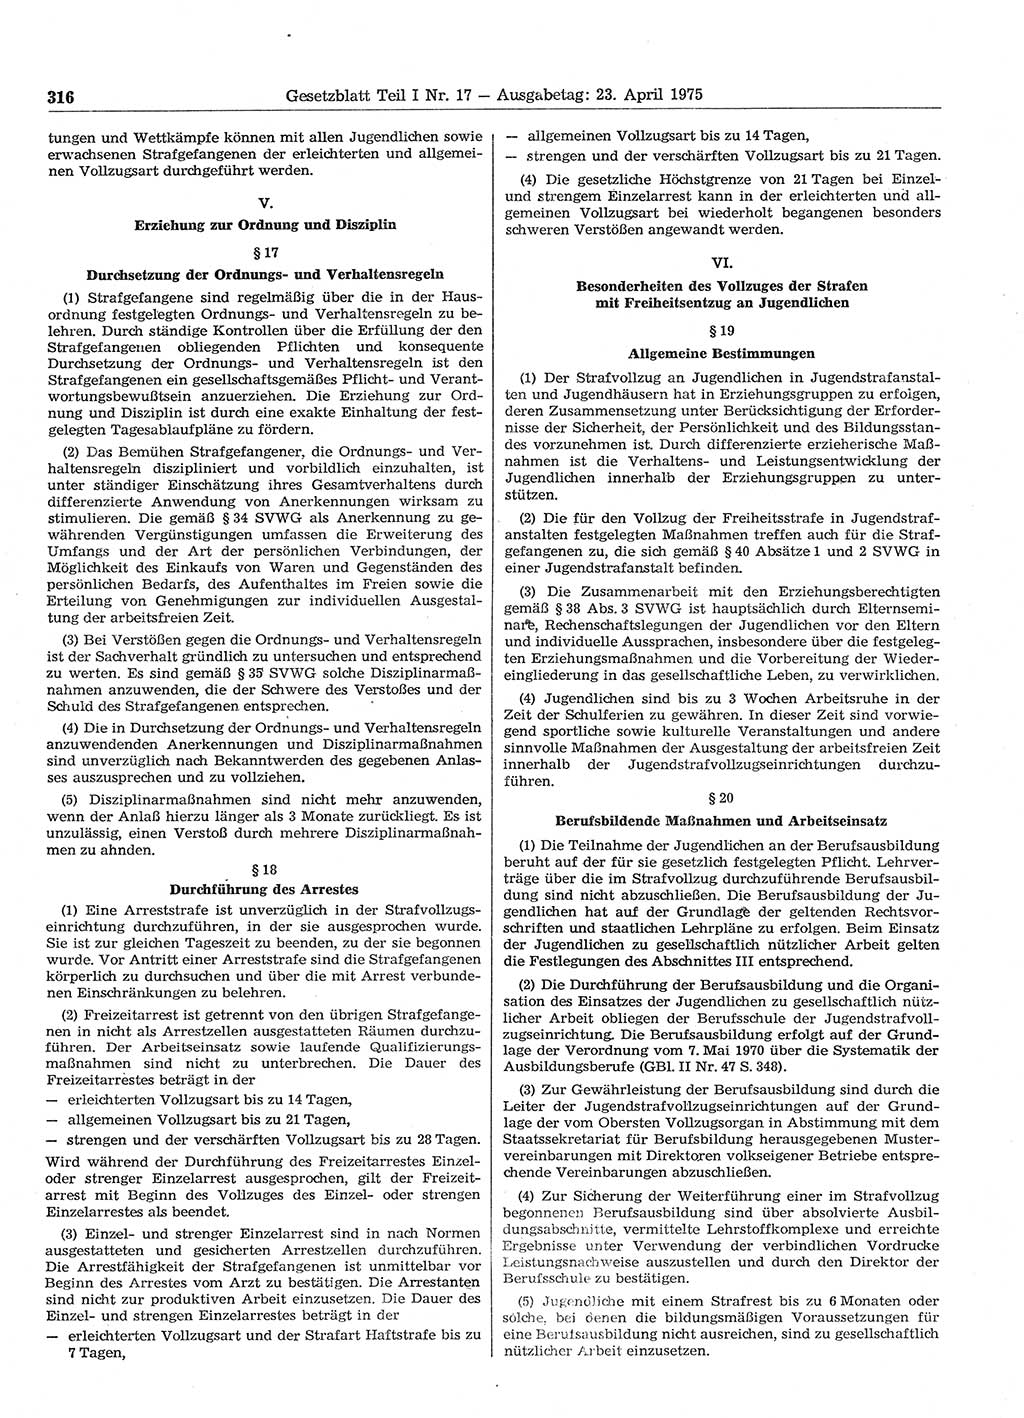 Gesetzblatt (GBl.) der Deutschen Demokratischen Republik (DDR) Teil Ⅰ 1975, Seite 316 (GBl. DDR Ⅰ 1975, S. 316)